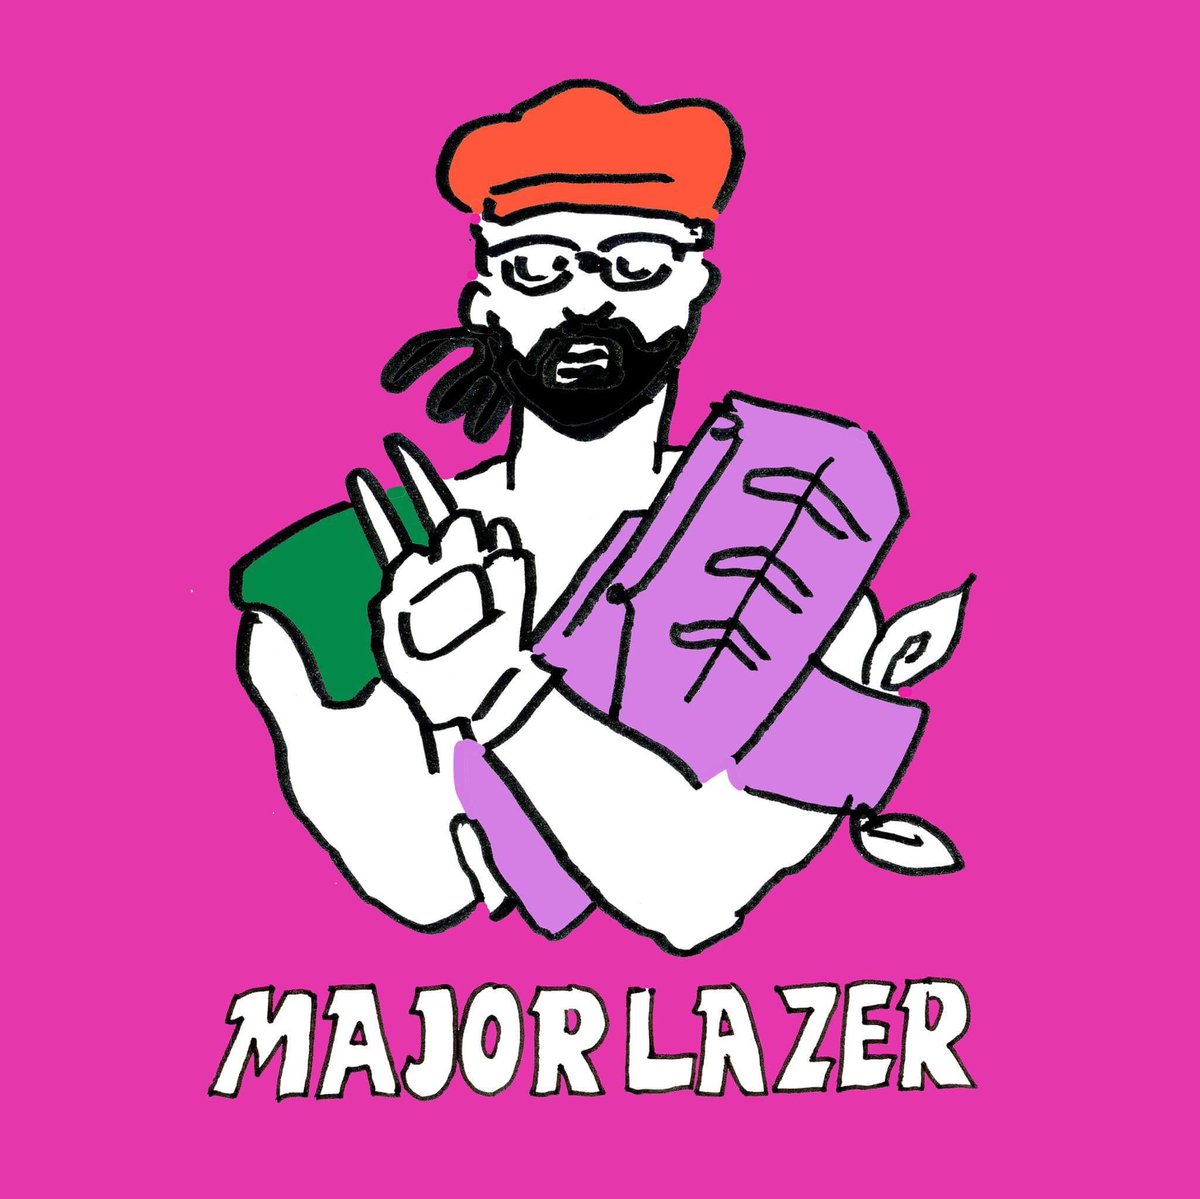 フジロック楽しみすぎて、このアーティスト好きな人はこんなファッションしてそう妄想しました。Major Lazerガールはきっとフジイチまぶしい存在のはず。(パリピになりきれない私にとって)
#フジロック #フジロック2017 #fujirock #majorlazer 